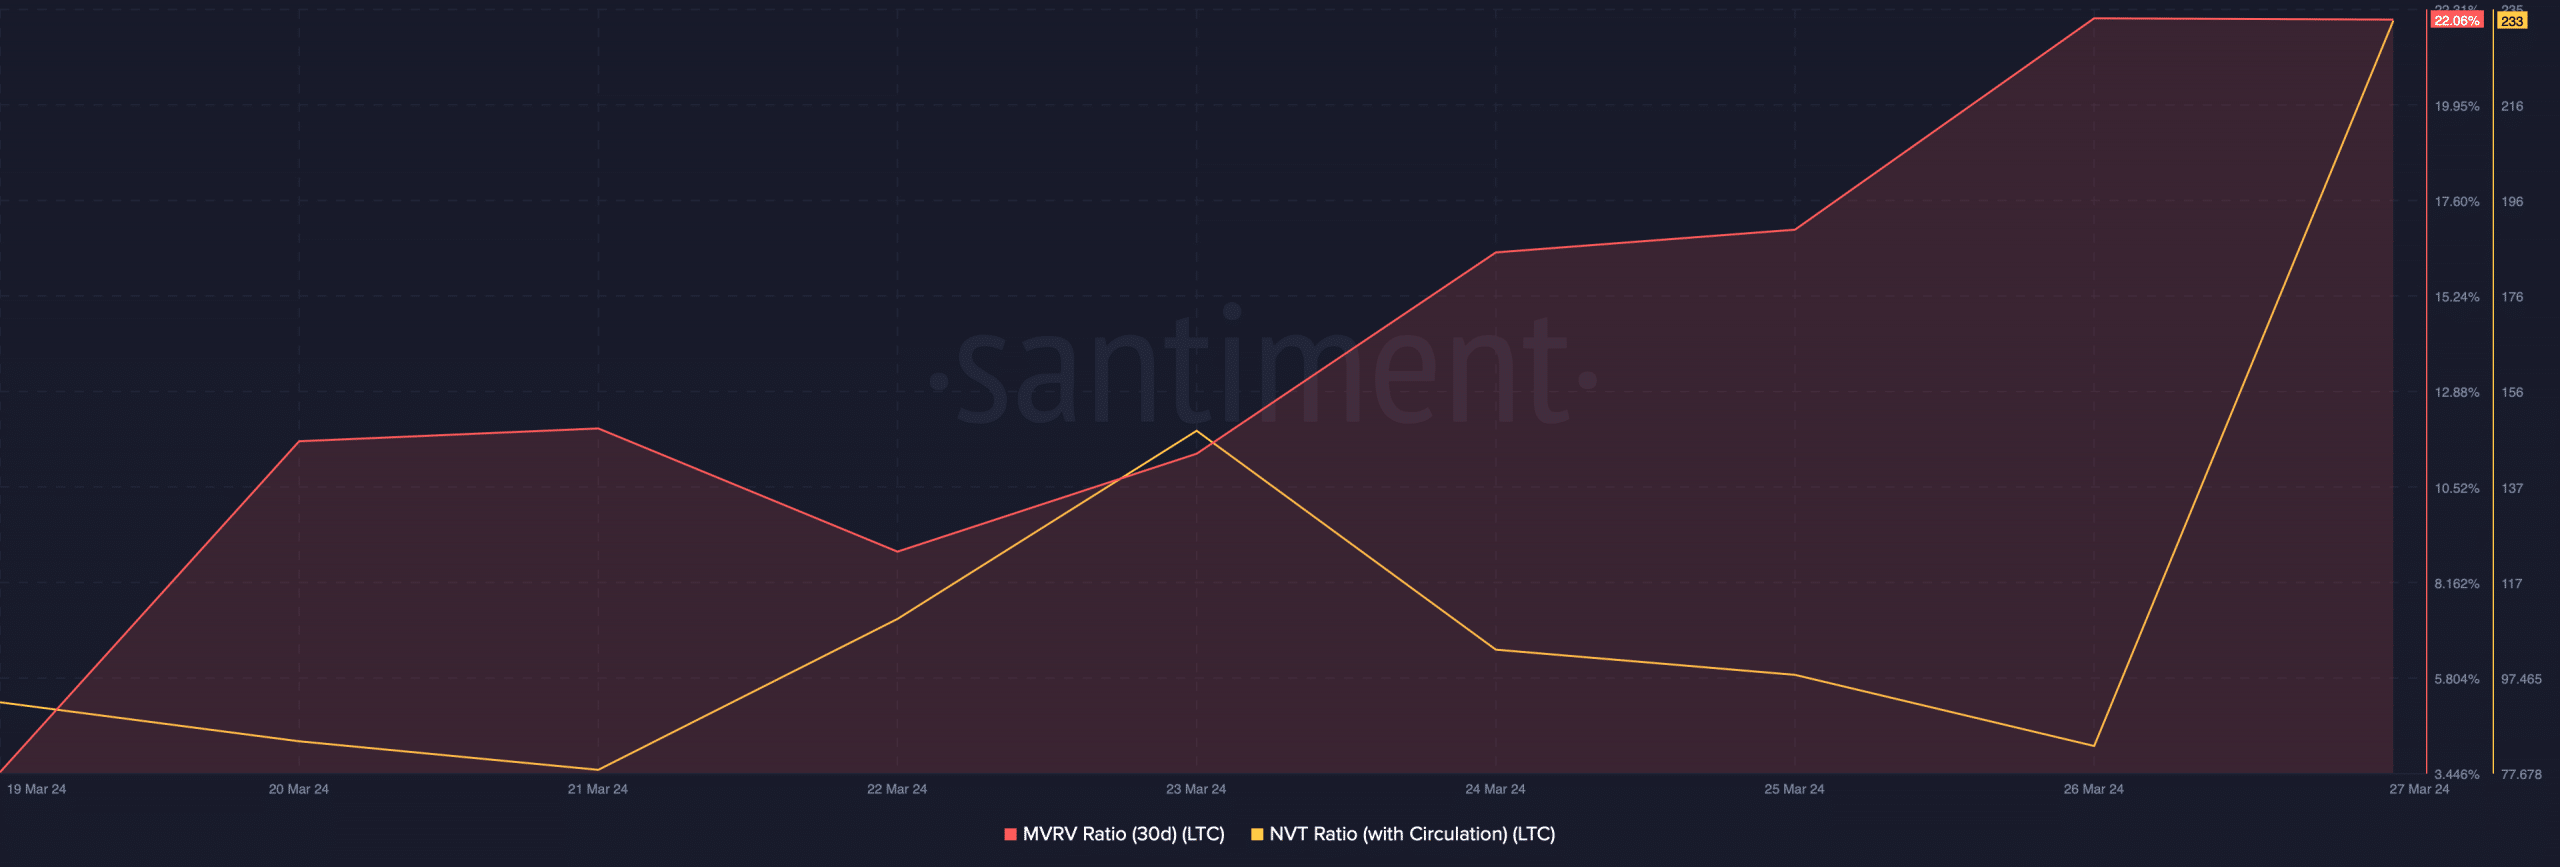 Litecoin's NVT Ratio spiked